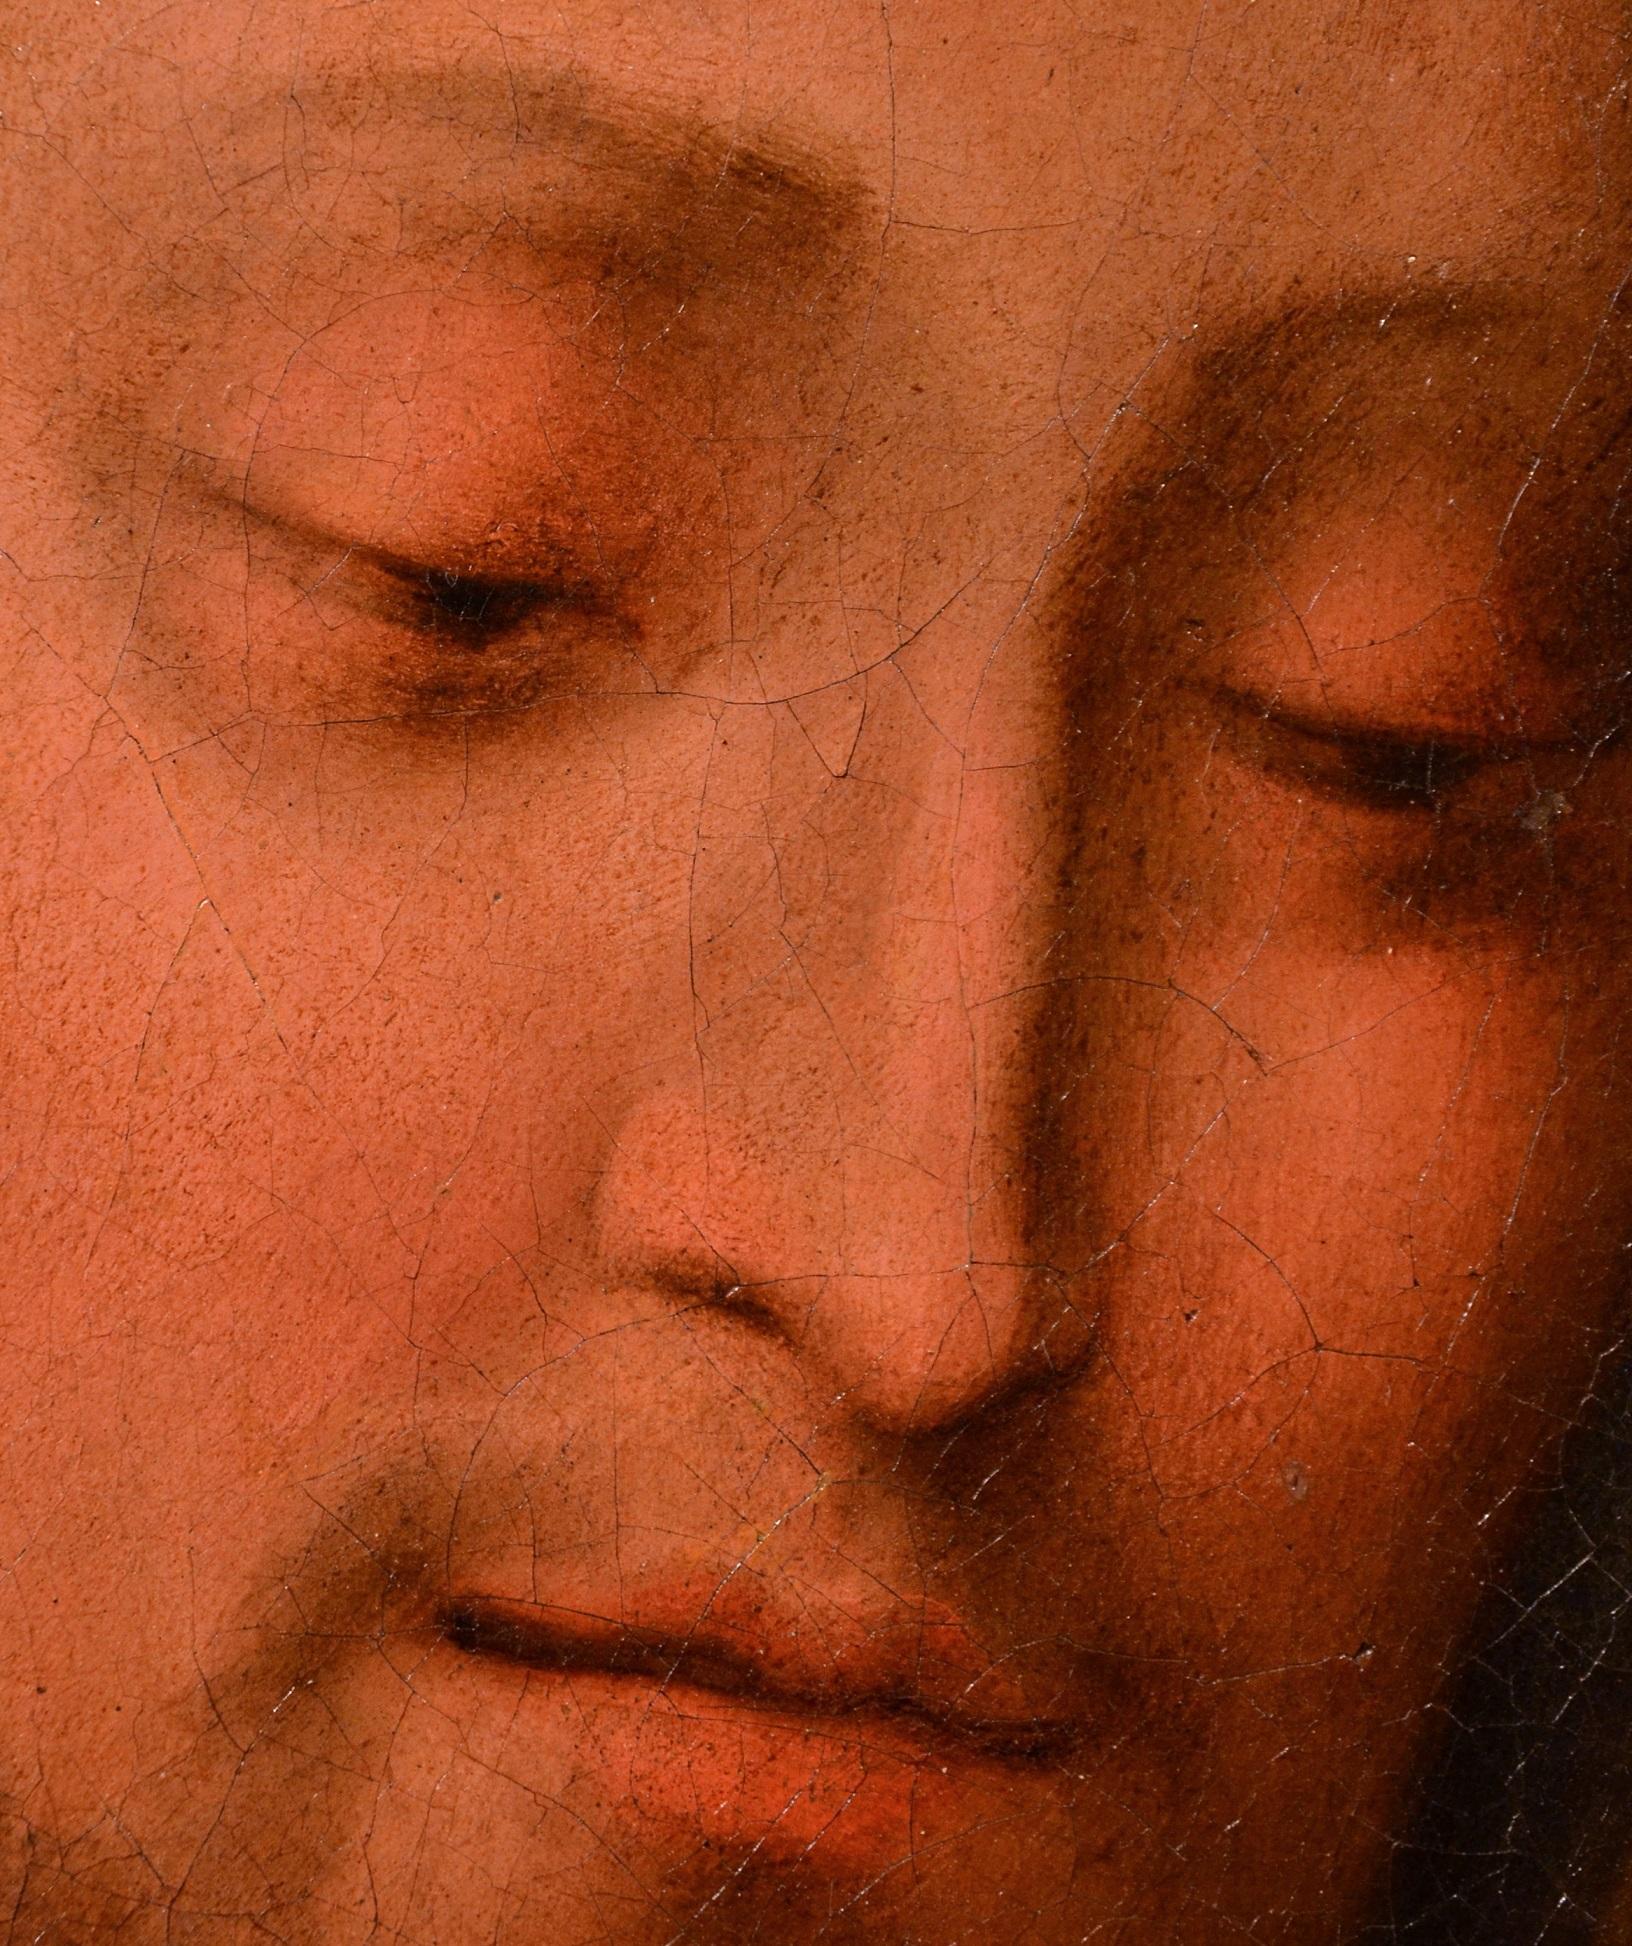 Salvator Mundi 17th Century Leonardo Italy Old master Paint Oil on canvas art 6